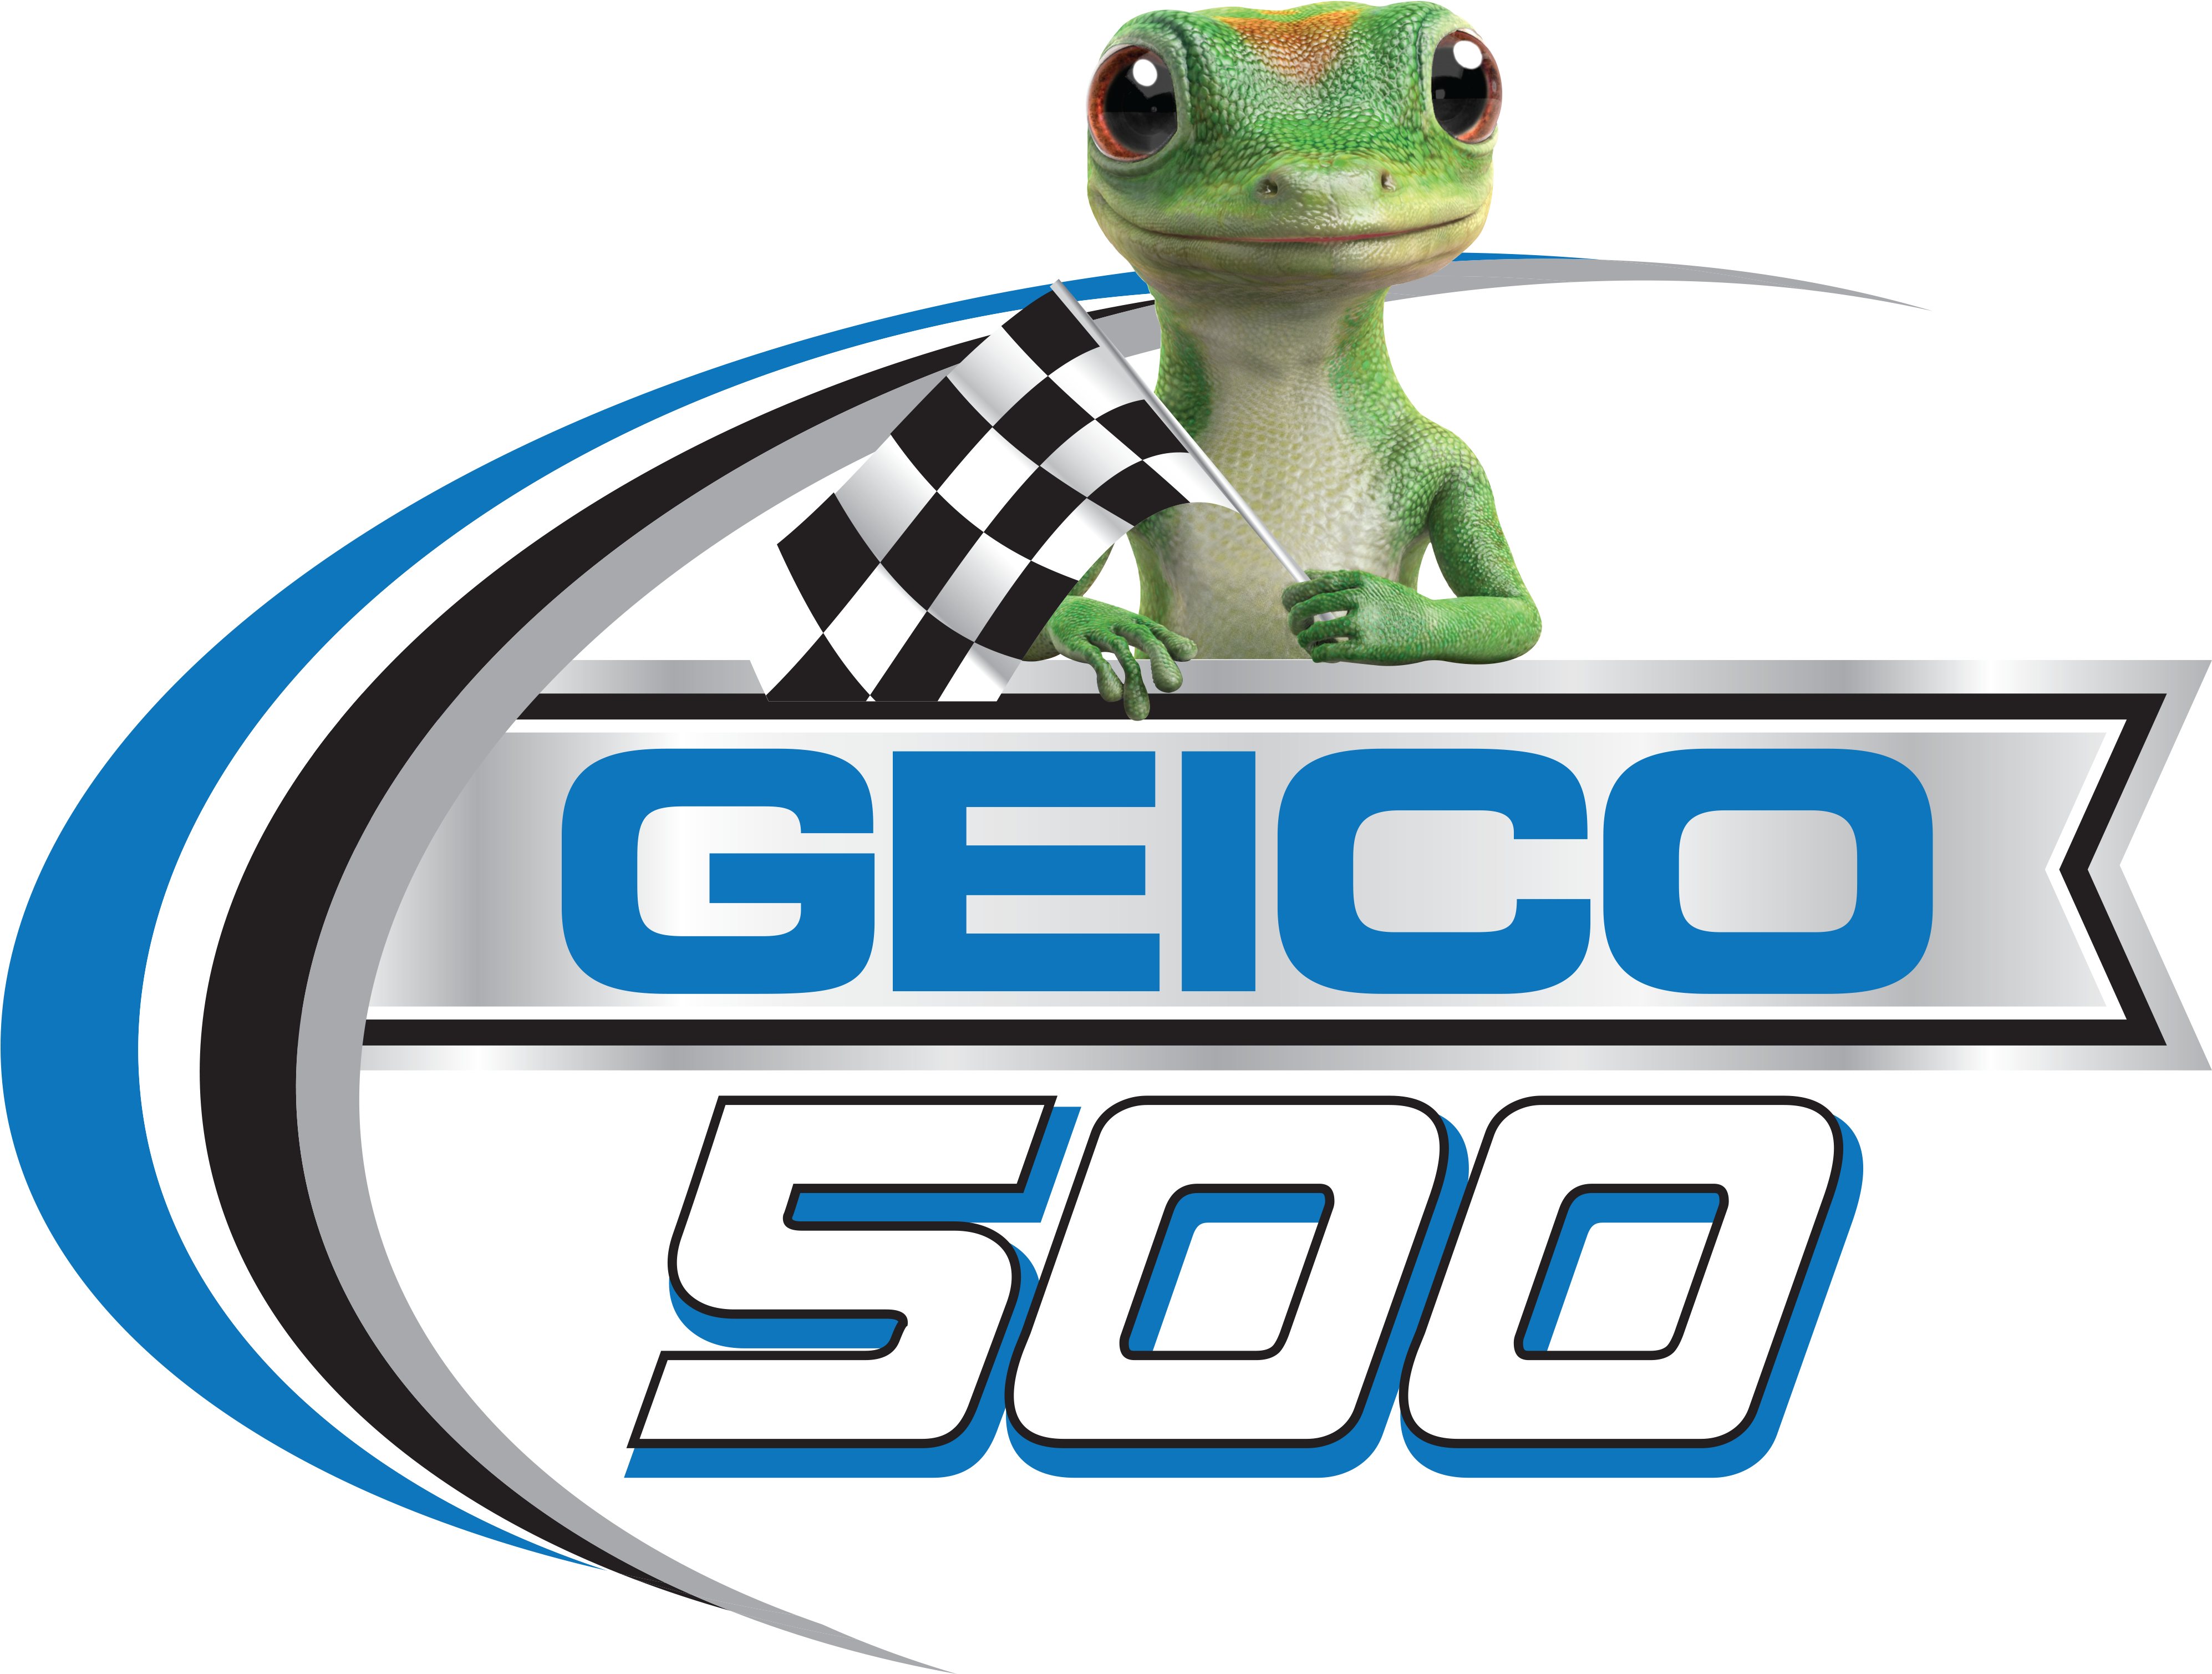 Geico - Geico 500 Talladega 2018 (4000x3017)